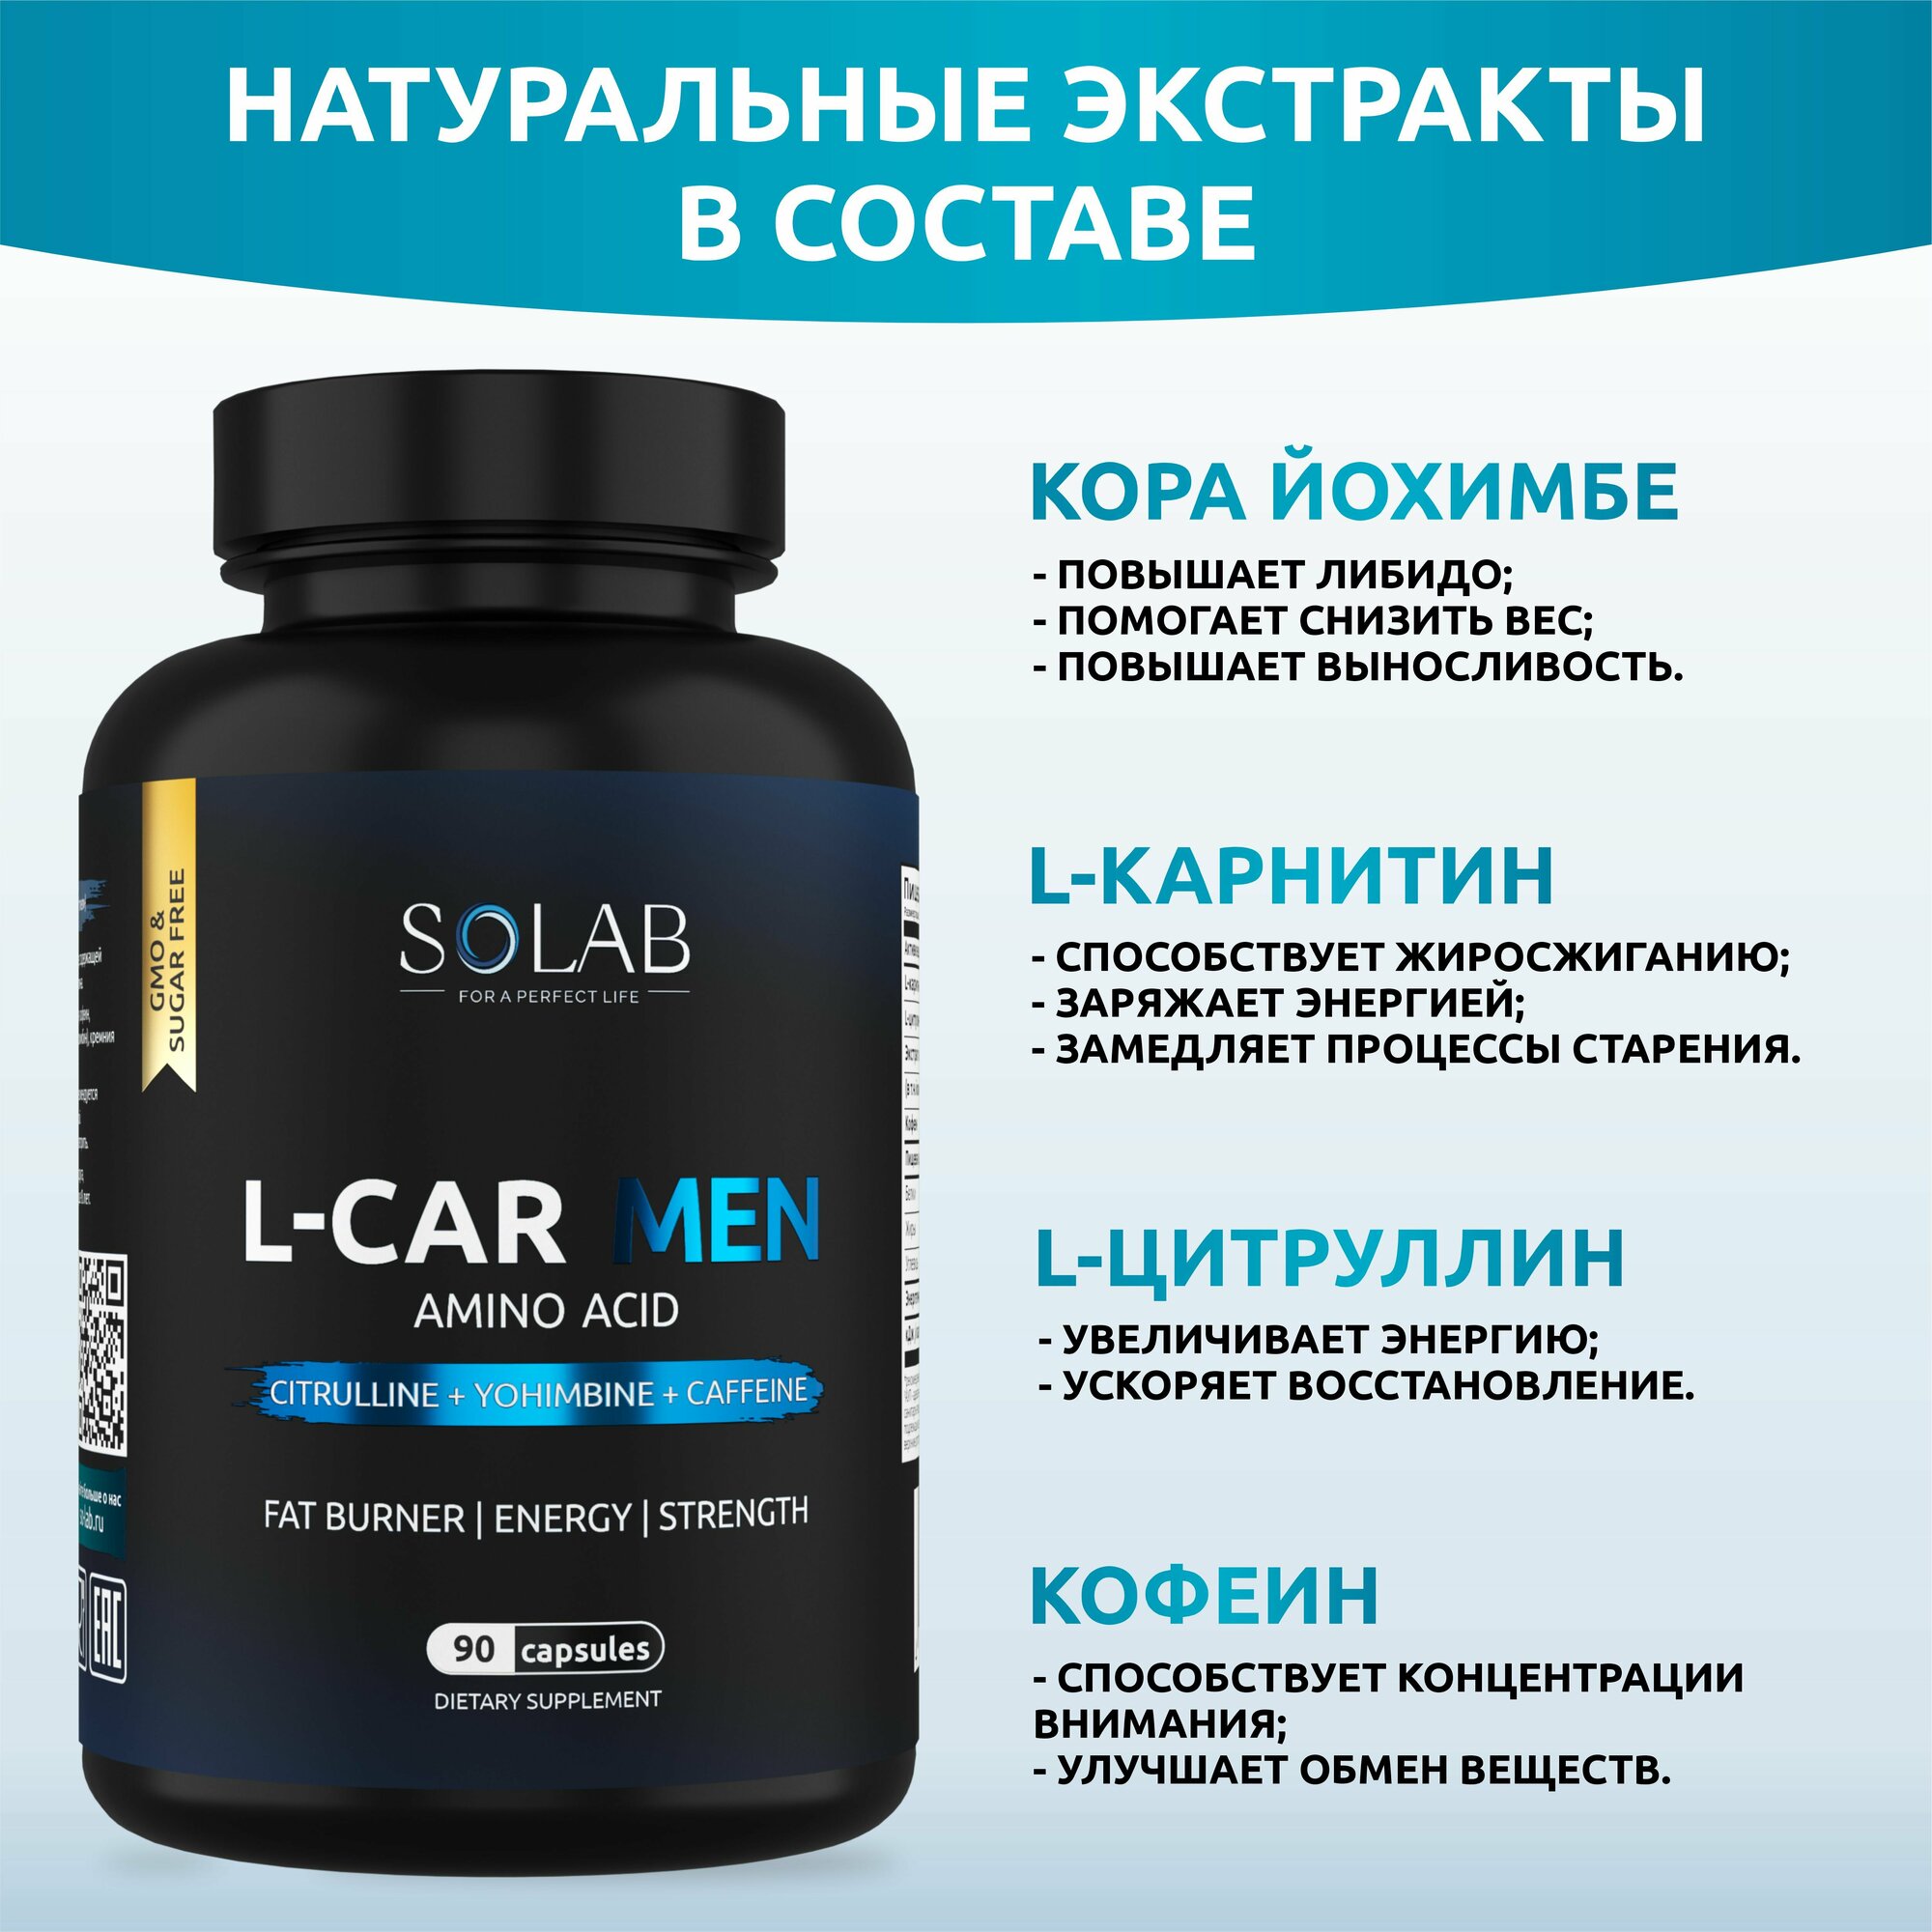 SOLAB L-Carnitine Men, для мужчин, энергетик, л-карнитин жиросжигатель, для похудения, 90 капсул